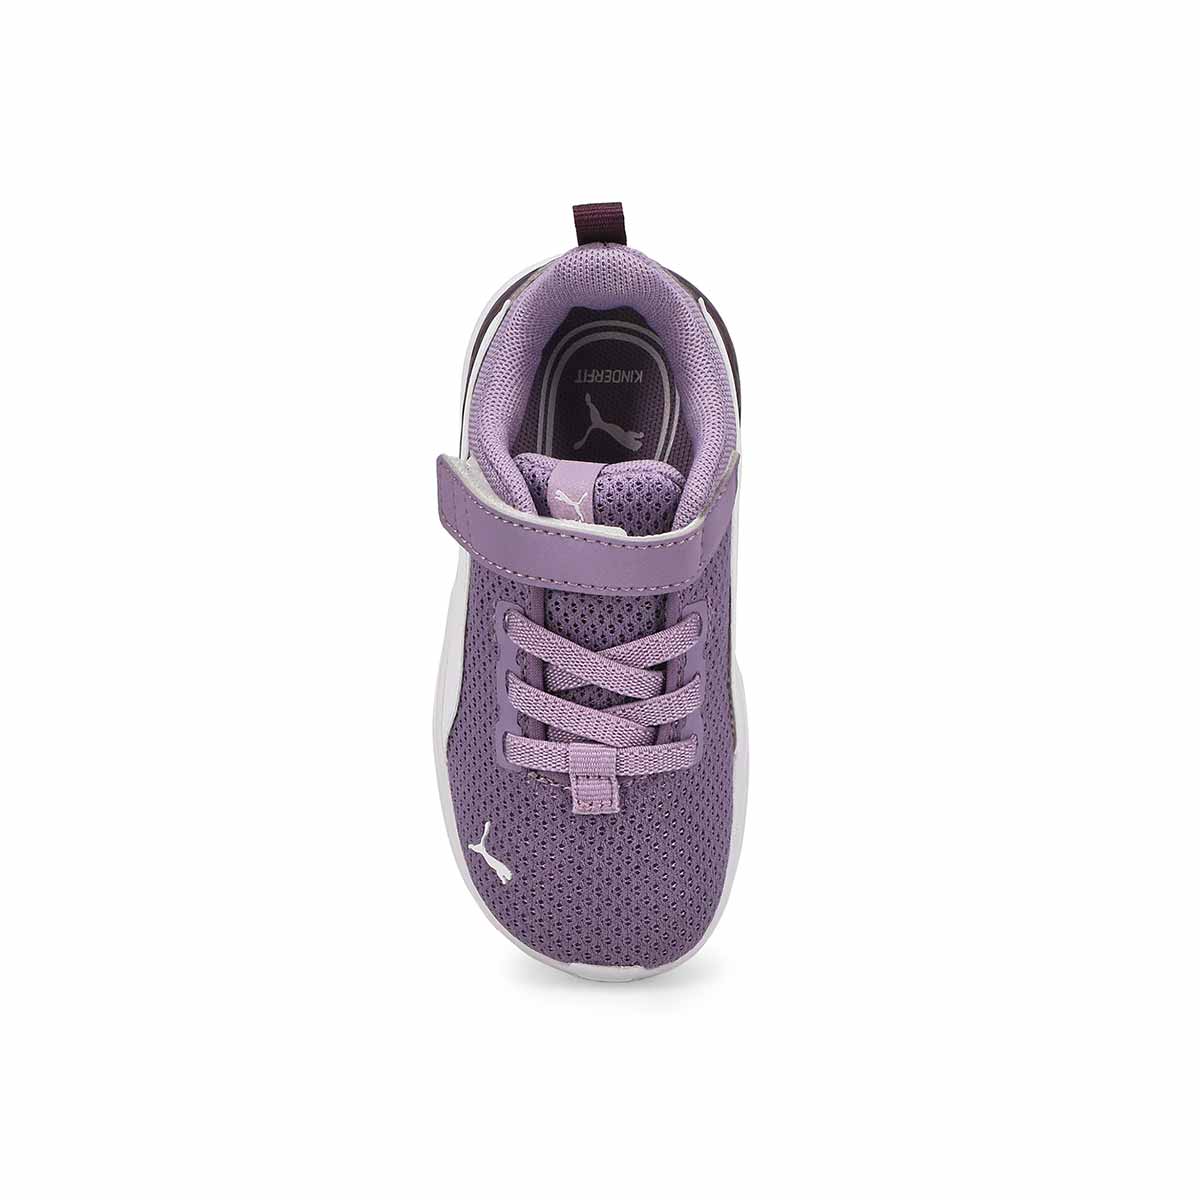 Infants' Anzarun Lite AC Sneaker - Purple/White